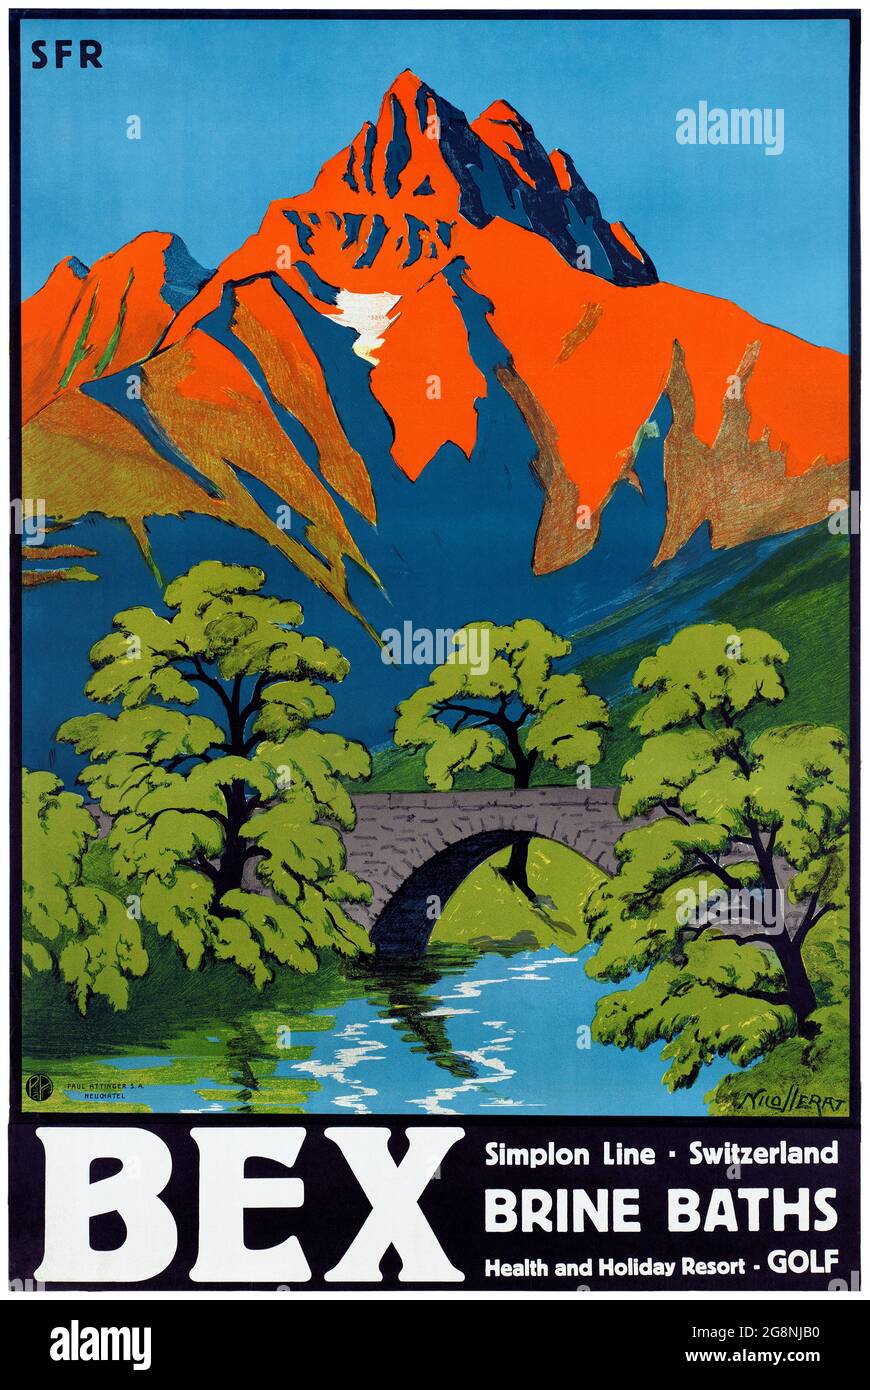 Bex, Simplon Line, Schweiz von Aimé-Félix Nicollerat (1876-1946). Restauriertes Vintage-Poster, das 1930 in der Schweiz veröffentlicht wurde. Stockfoto